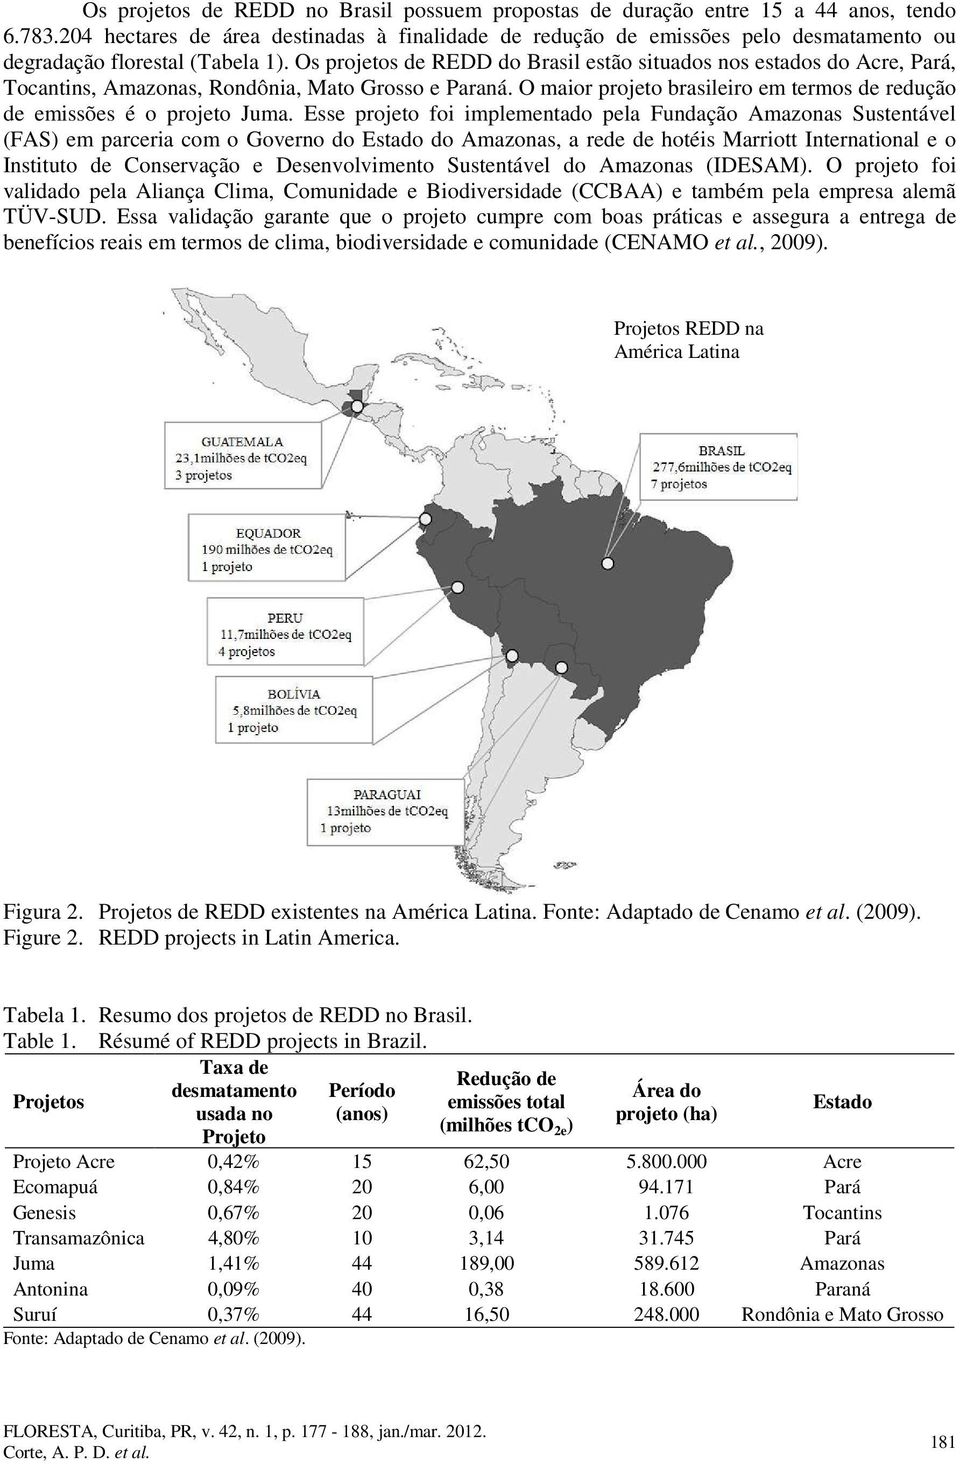 Os projetos de REDD do Brasil estão situados nos estados do Acre, Pará, Tocantins, Amazonas, Rondônia, Mato Grosso e Paraná.